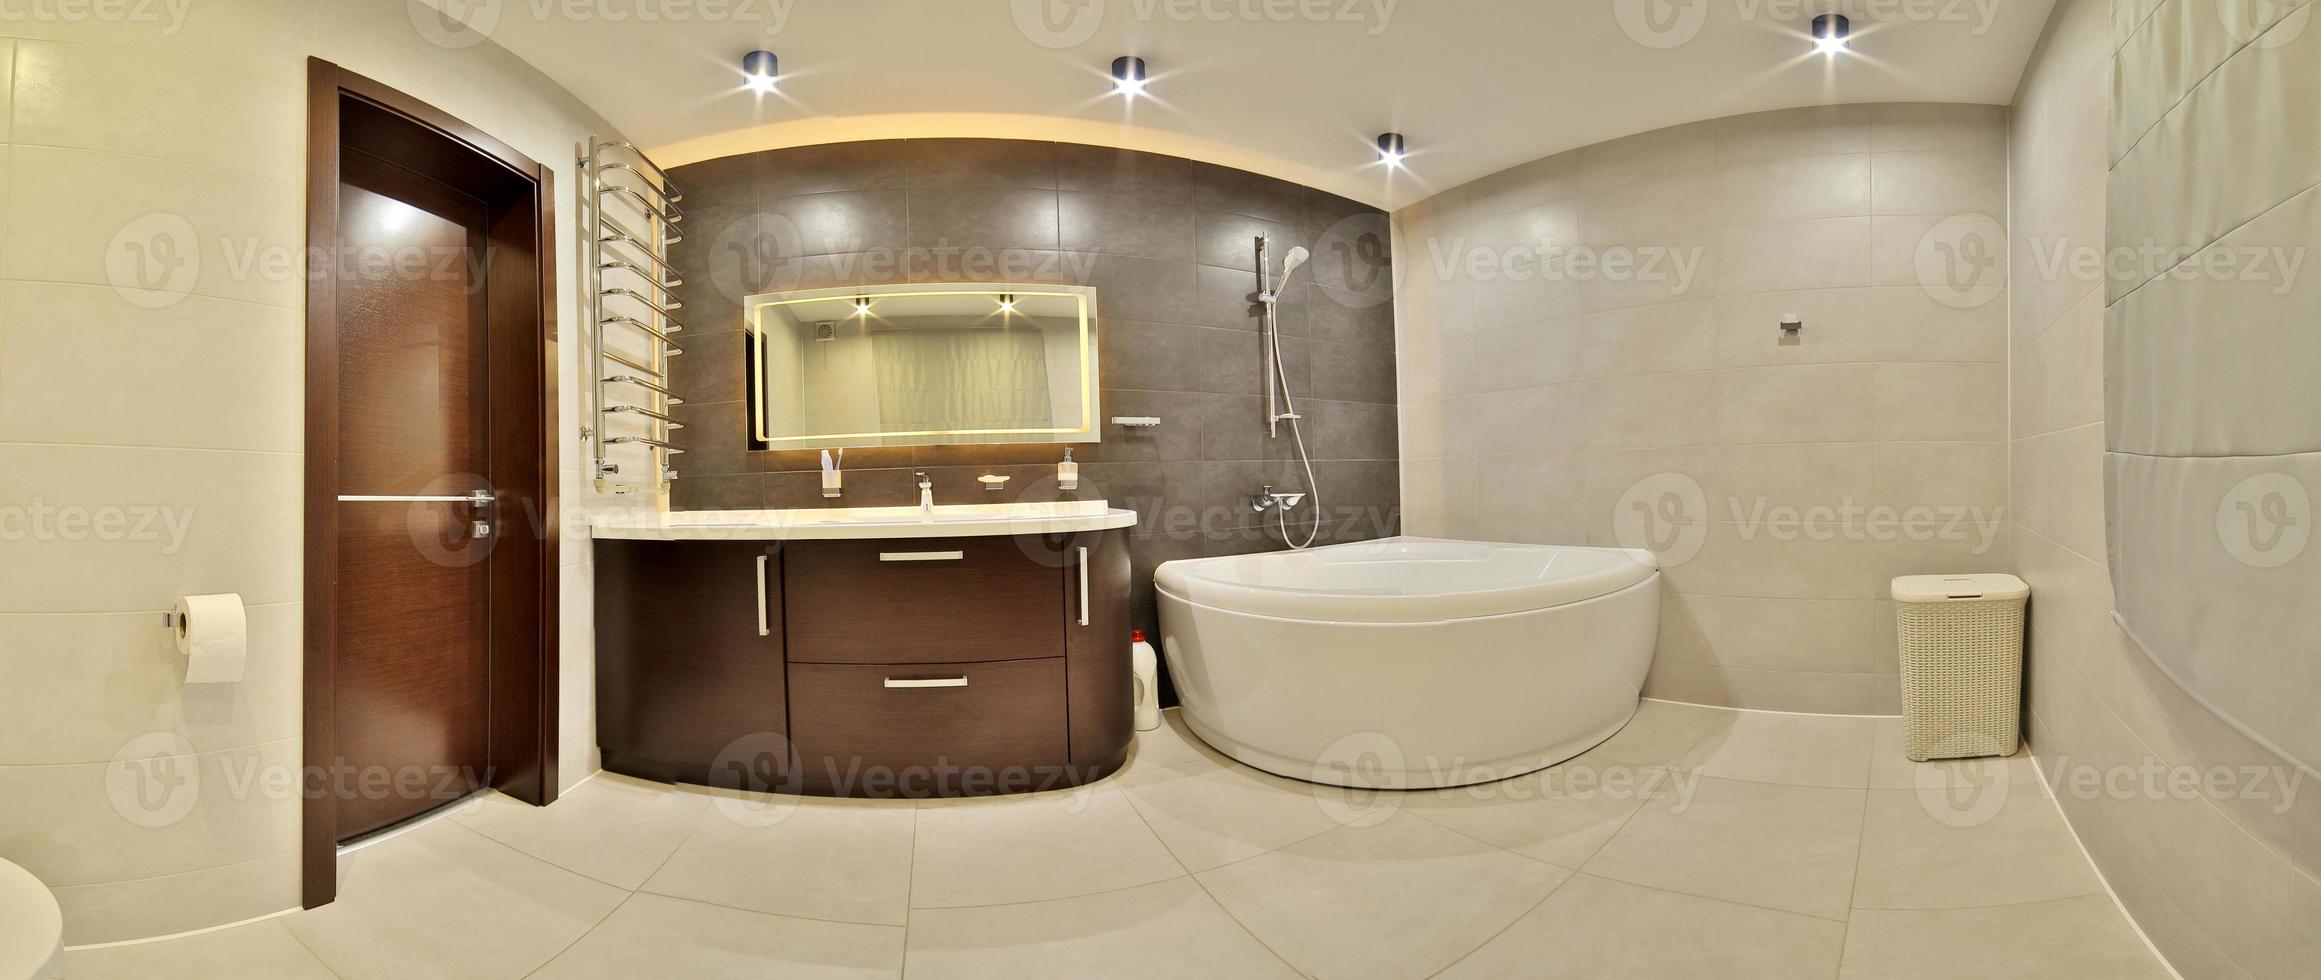 bagno di lusso in stile francese in casa. interno del bagno. foto